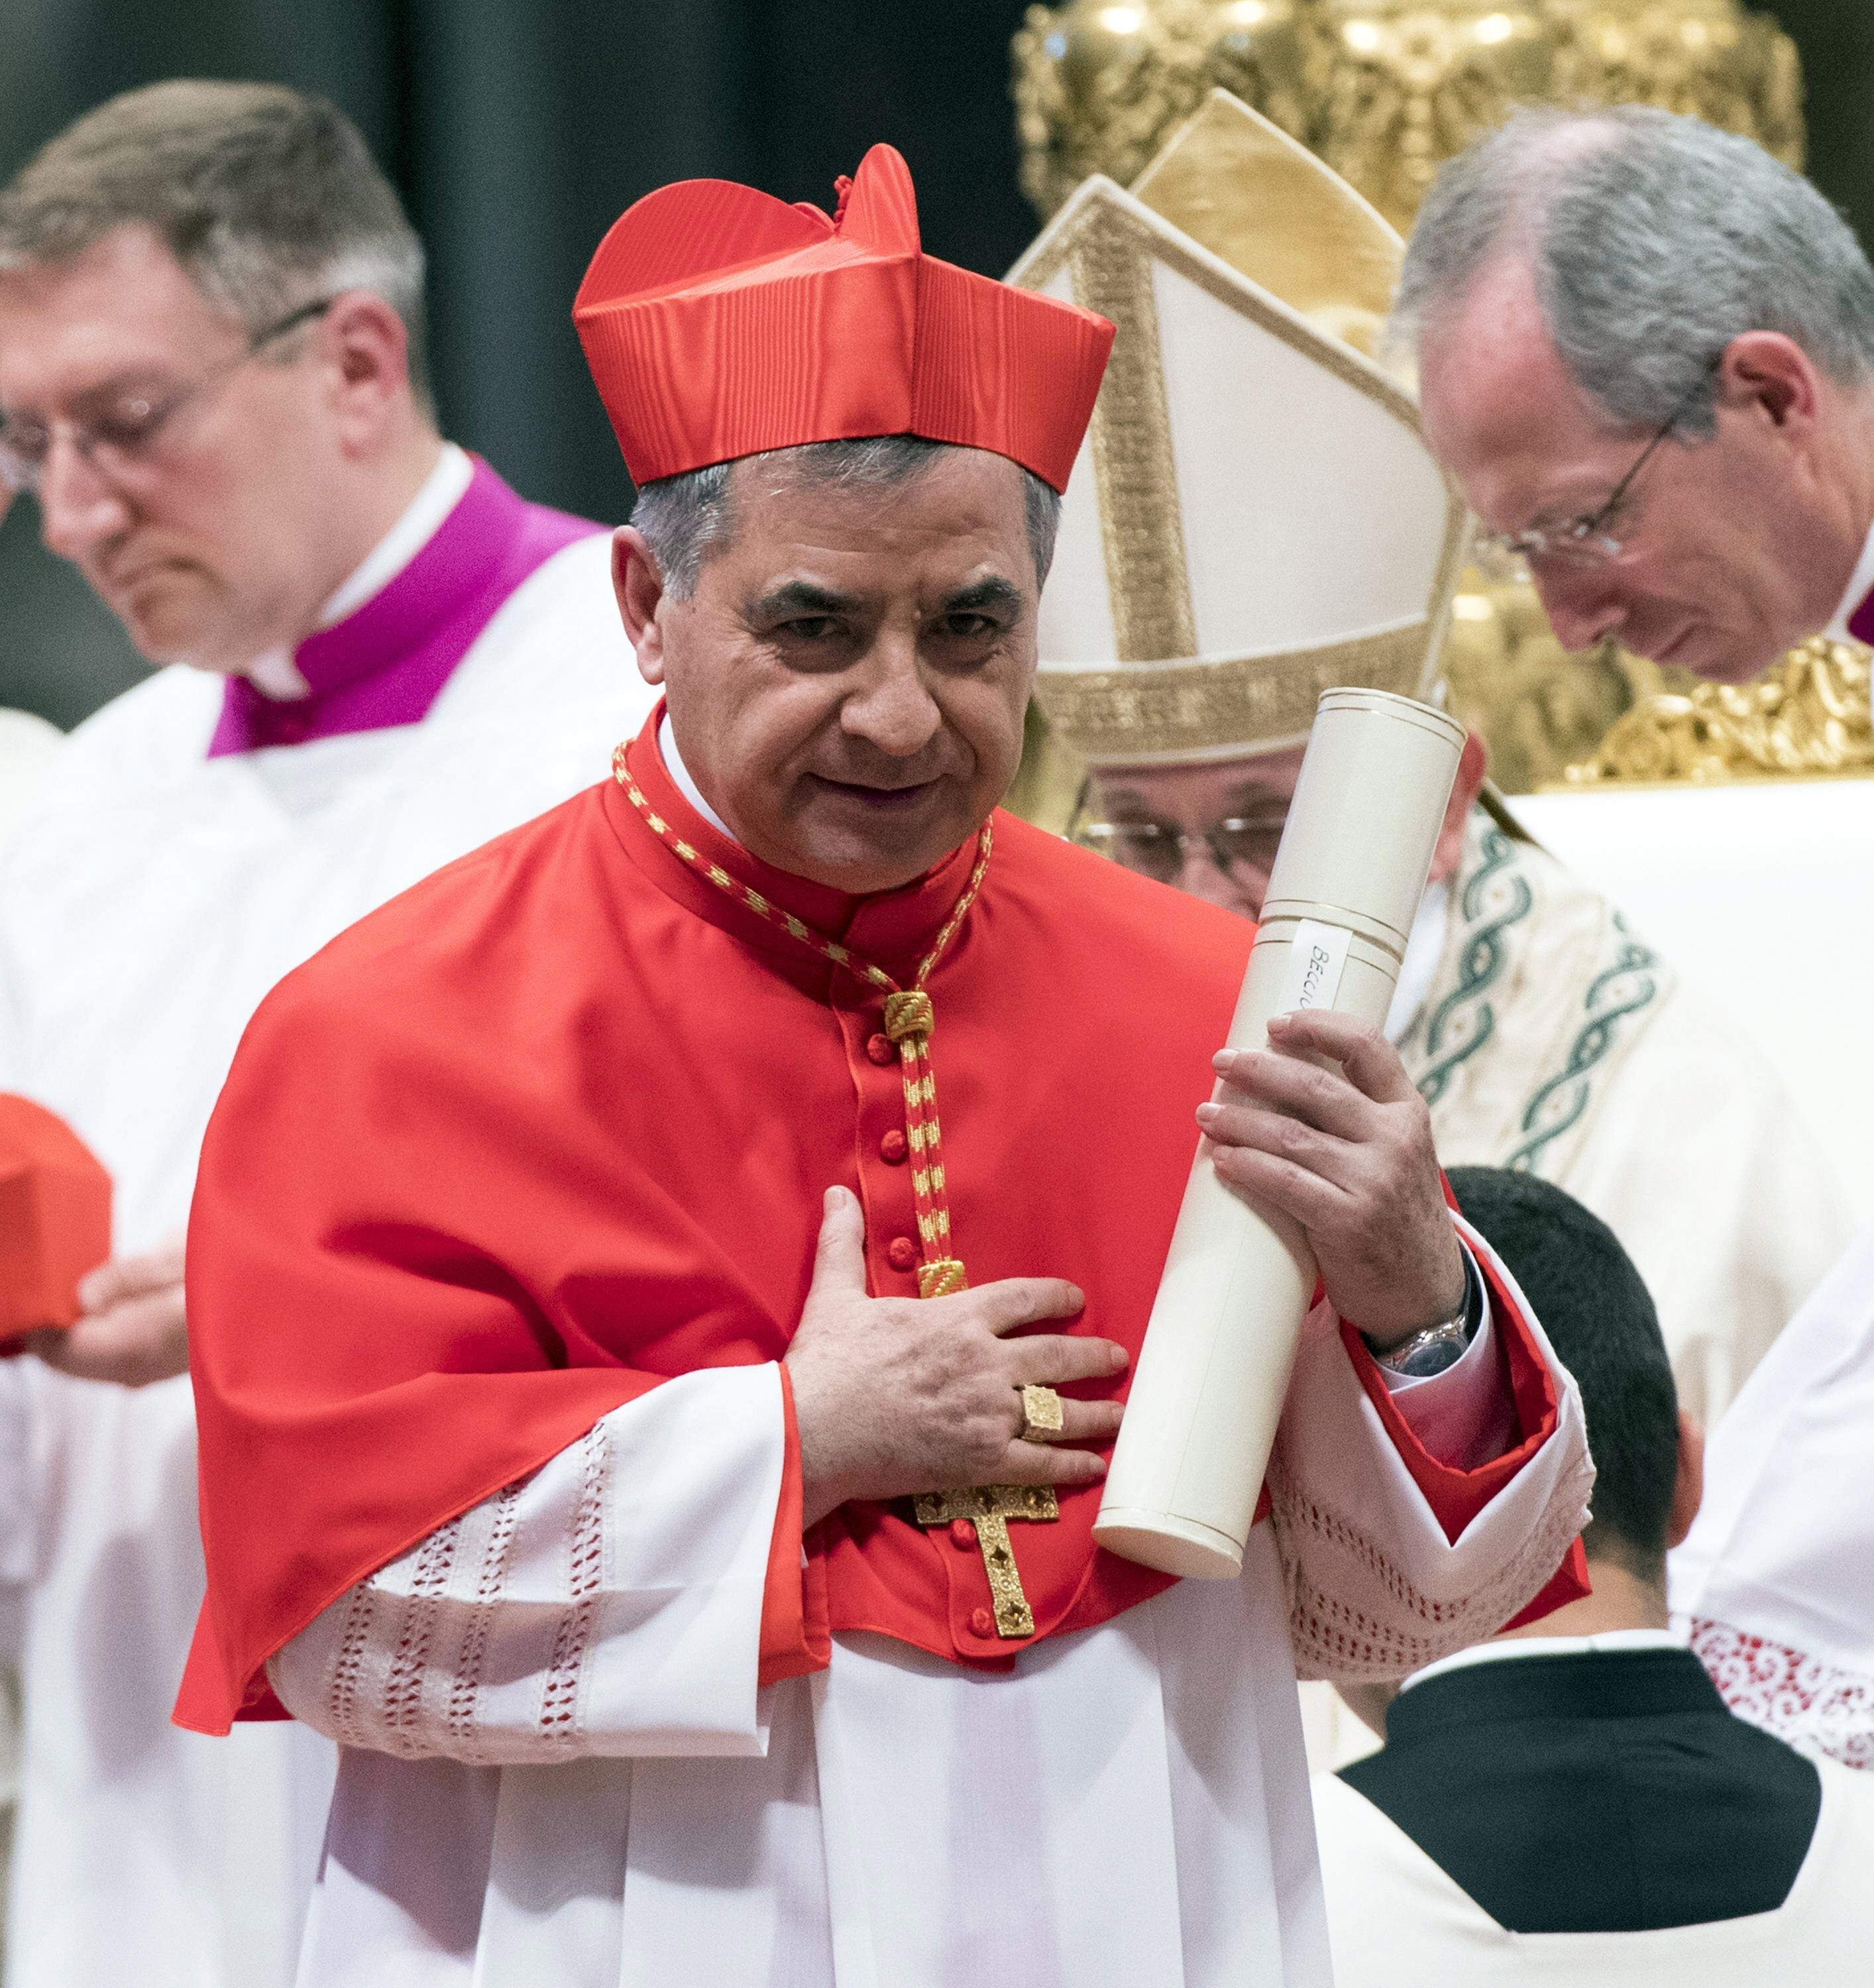 El cardenal Becciu formÃ³ parte de la Iglesia CatÃ³lica entre el 2011 y el 2018, perÃ­odo en el cual se detectaron una serie de irregularidades por las que estÃ¡ siendo investigado (EFE)